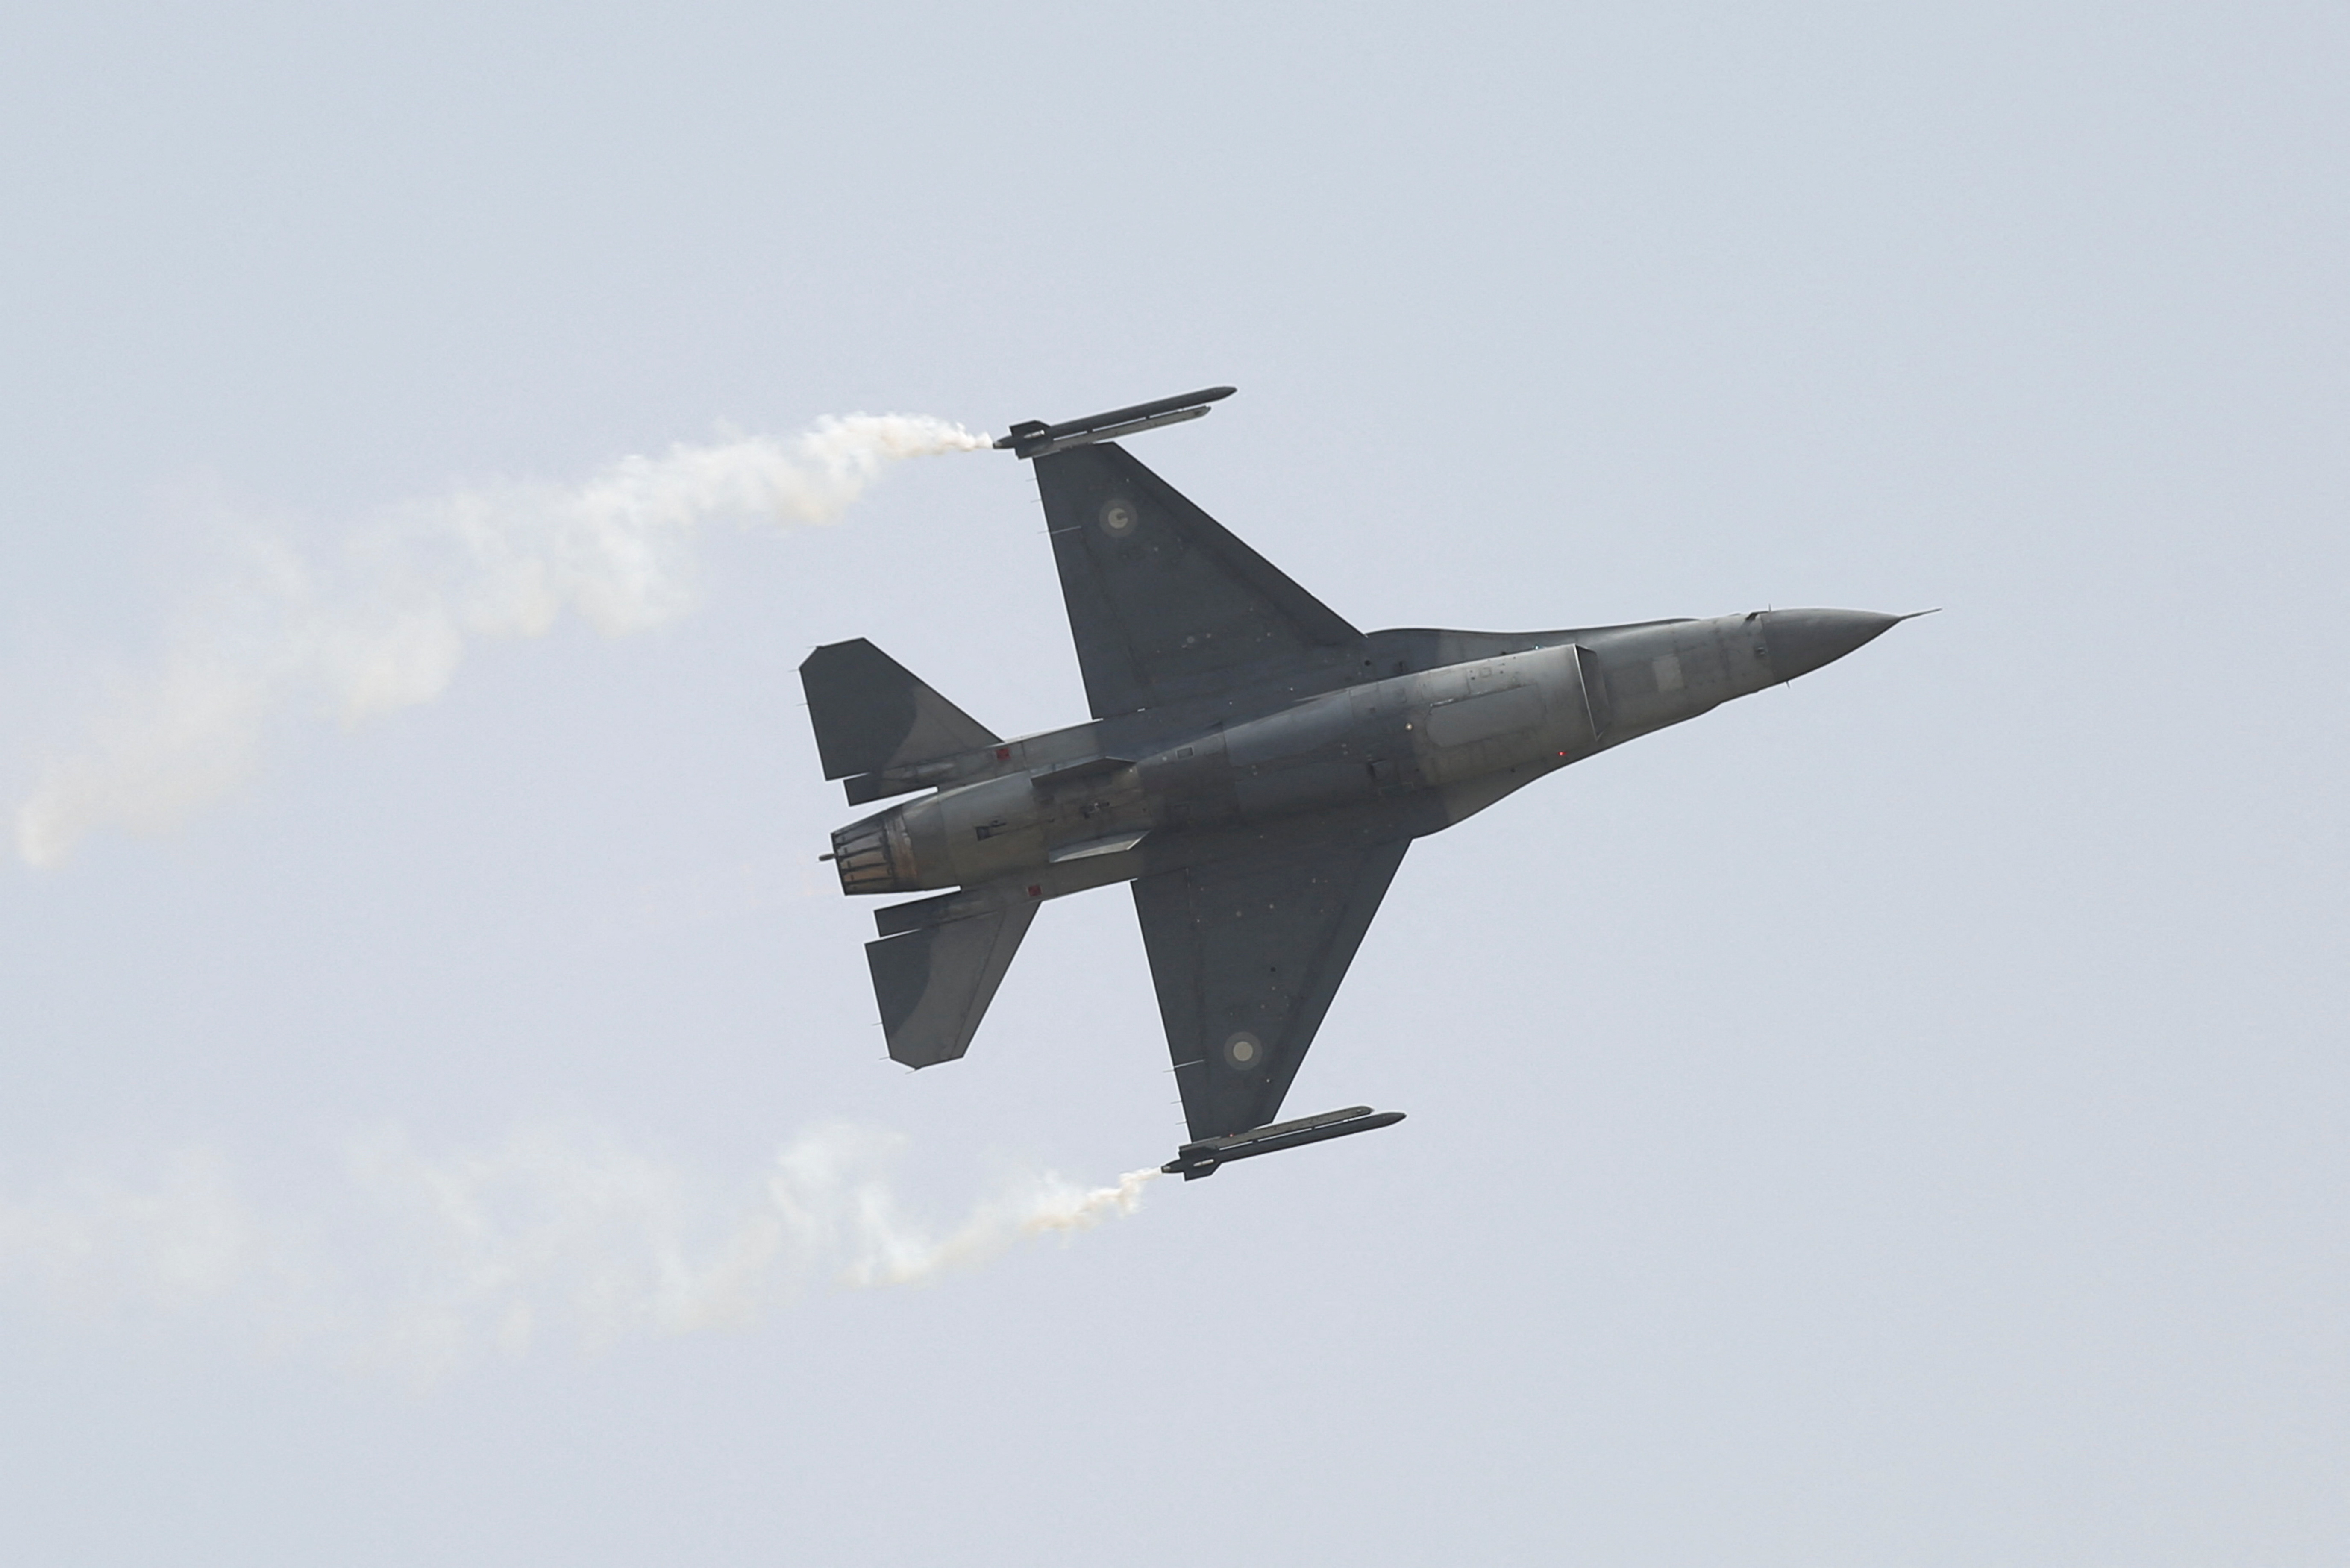 Oficiales superiores y pilotos de la Fuerza Aérea probaron en Pekín aviones de combate chinos